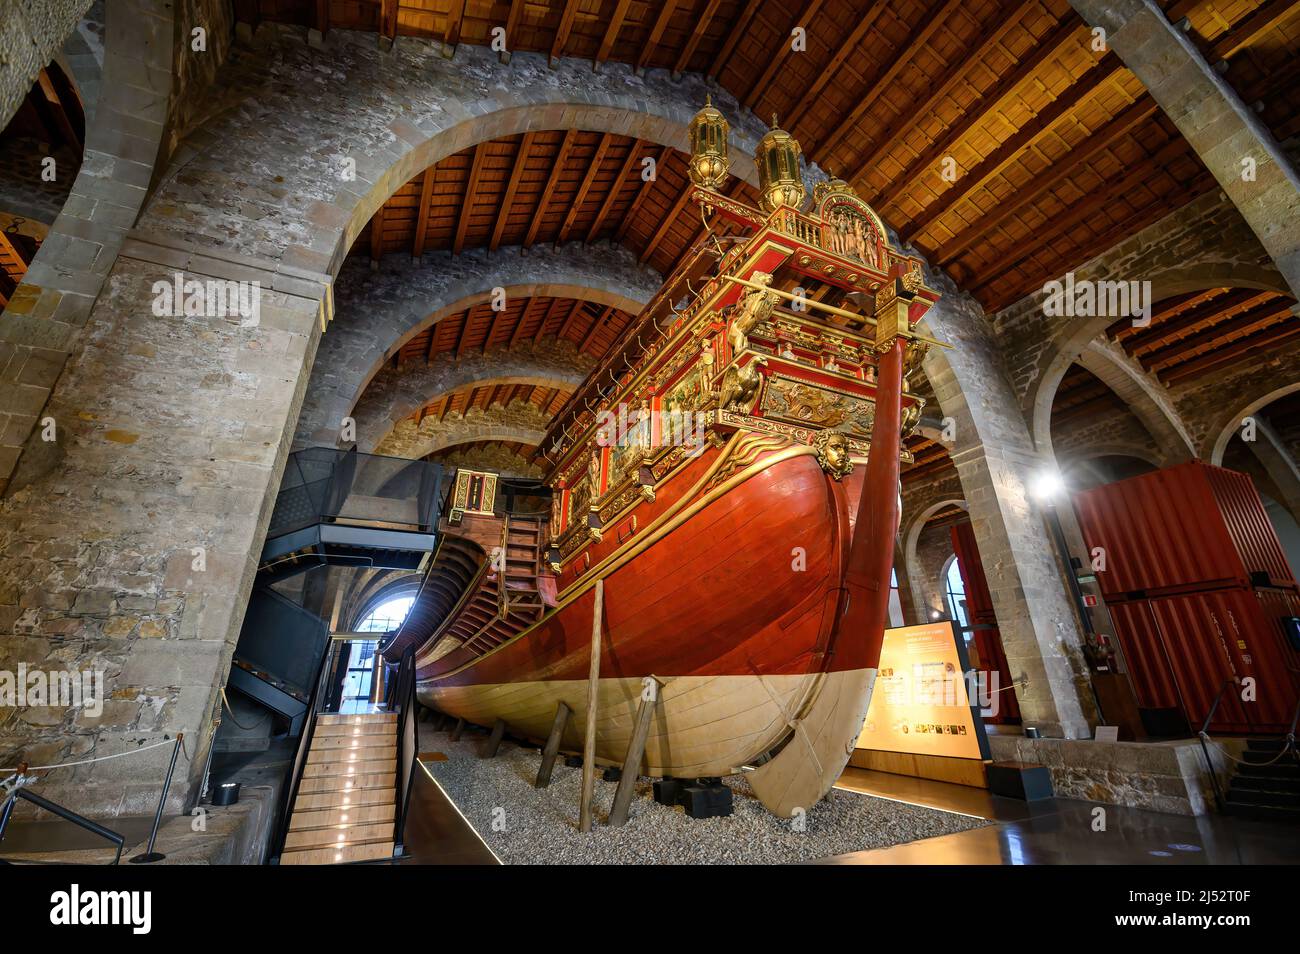 Barcelone, Espagne. Royal Galley navire dans le Musée maritime, construit dans les Drassanes Reals en 1568 Banque D'Images